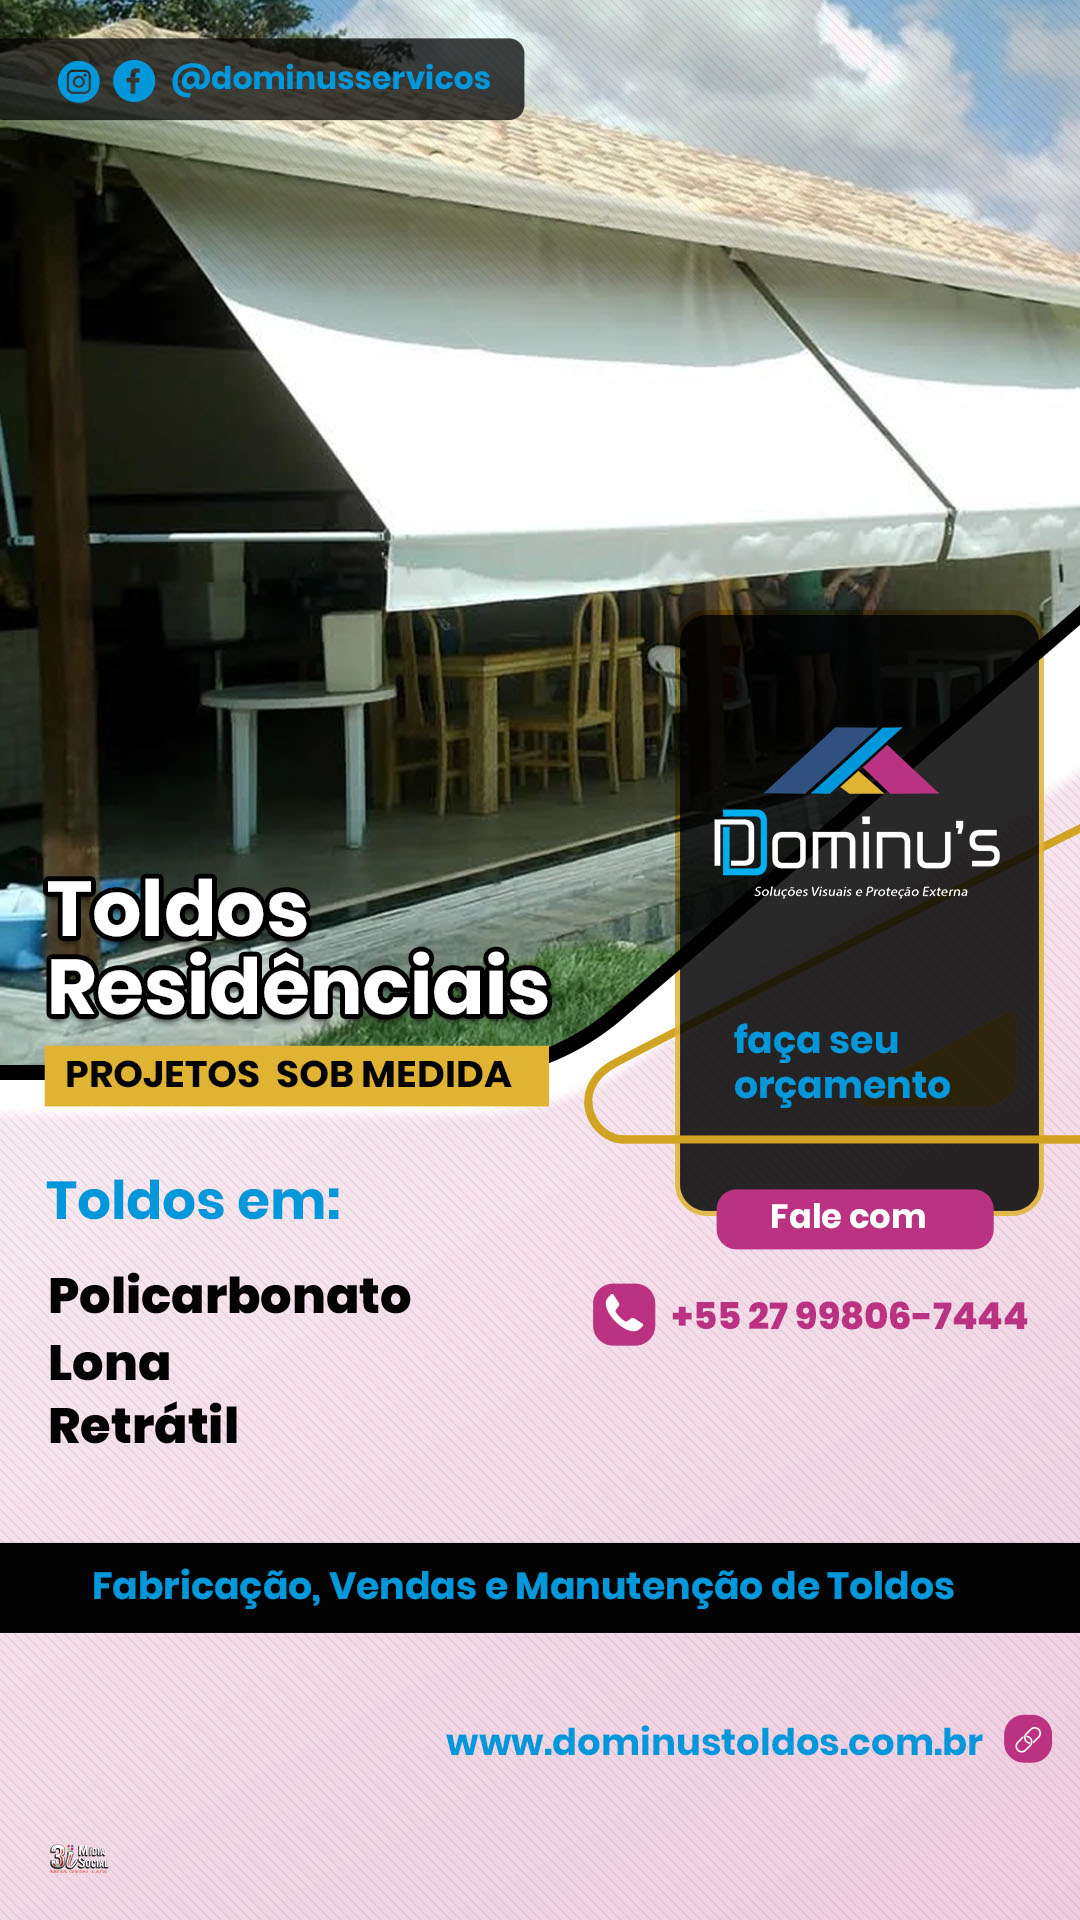 stories - Dominus 2024 - toldos residenciais - 02